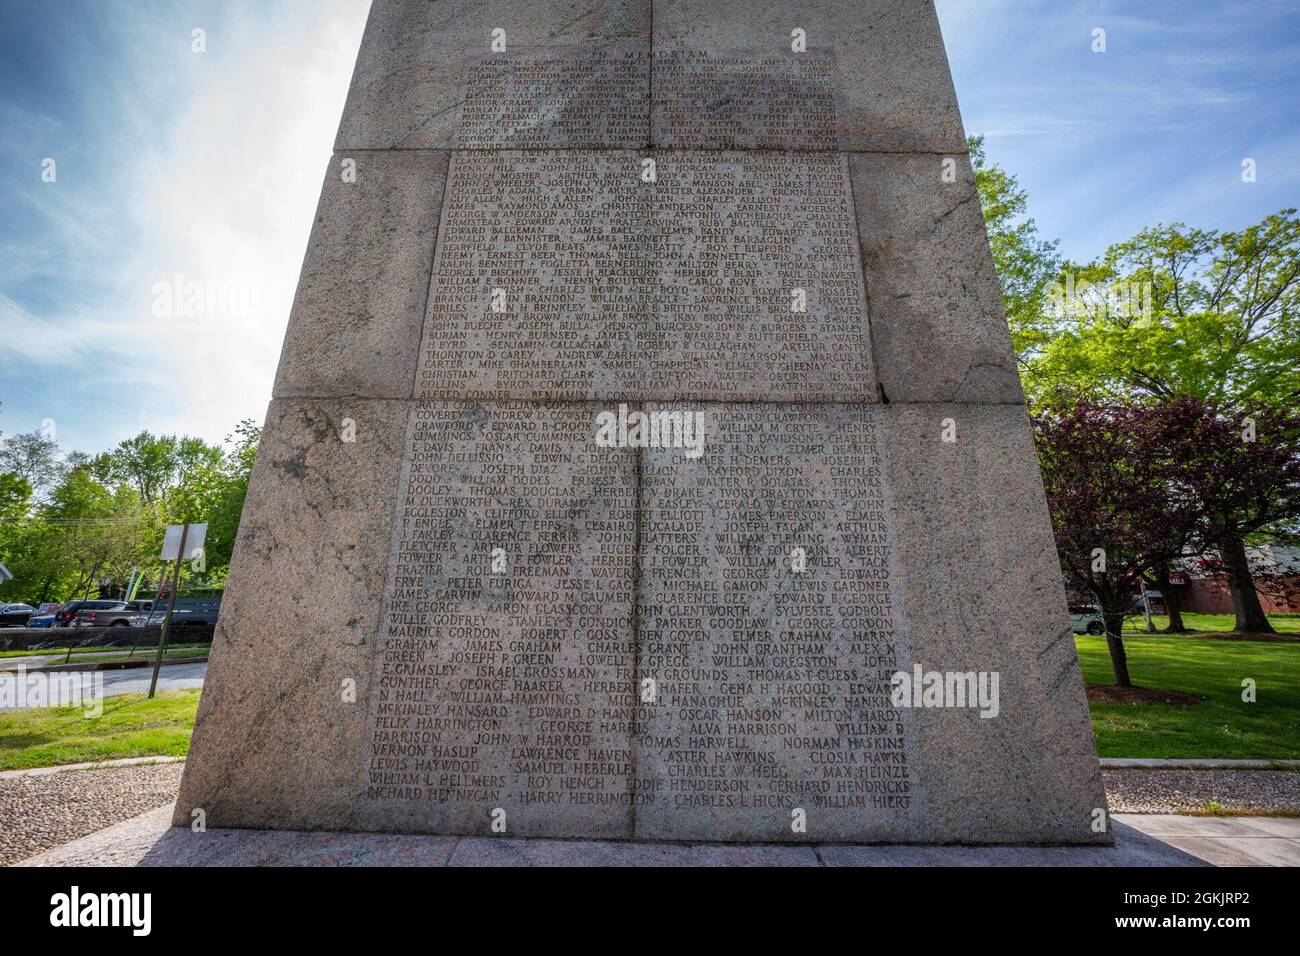 Lista de nombres en el lado oeste del Monumento Conmemorativo Camp Merritt en Cresskill, N.J., 6 de mayo de 2021. El obelisco de 66 pies de altura, que marcó el centro del campamento, está dedicado a los soldados que se embarcaron en el campamento para luchar en Europa durante la Primera Guerra Mundial. Inscritos en los lados este y oeste del monumento están los nombres de los 573 soldados, cuatro enfermeras y un civil que murieron en el campamento debido a la epidemia de gripe de 1918. En el lado norte es un relieve esculpido por Robert I. Aitken de un Doughboy de la Primera Guerra Mundial. Directamente enfrente hay un mapa dimensional de talla de piedra de Camp Merritt. El Monumento fue Foto de stock